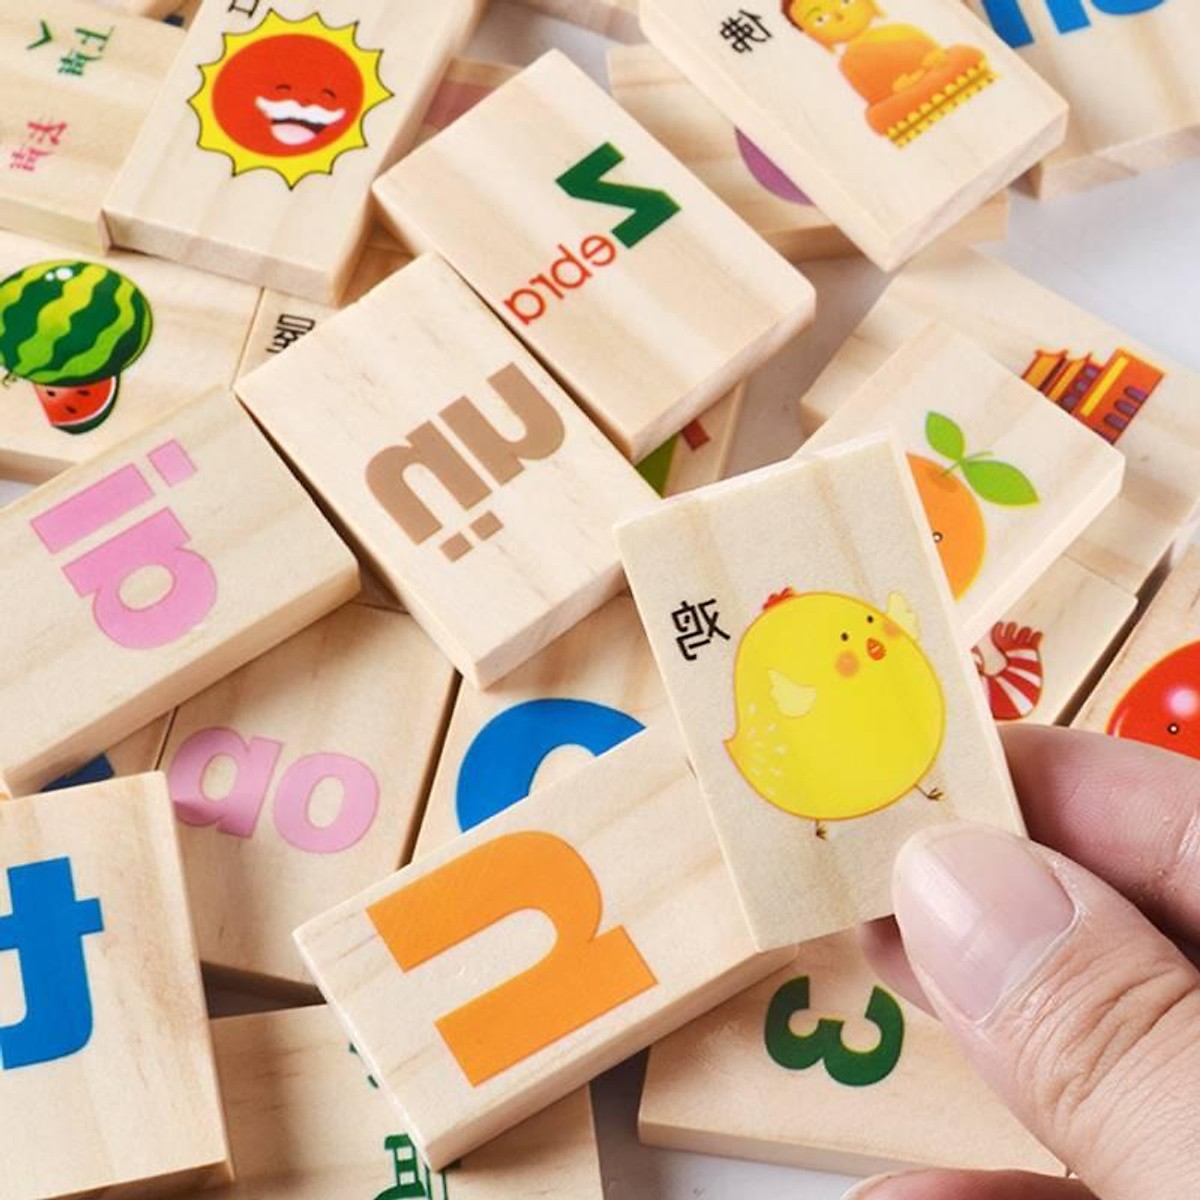 Đồ chơi thả hình khối bằng gỗ, bộ đồ chơi thả hình nhiều chủ đề giúp phát triển trí thông minh, đồ chơi giáo dục giúp phát triển trí tuệ trẻ em làm từ gỗ tự nhiên an toàn cho bé 3